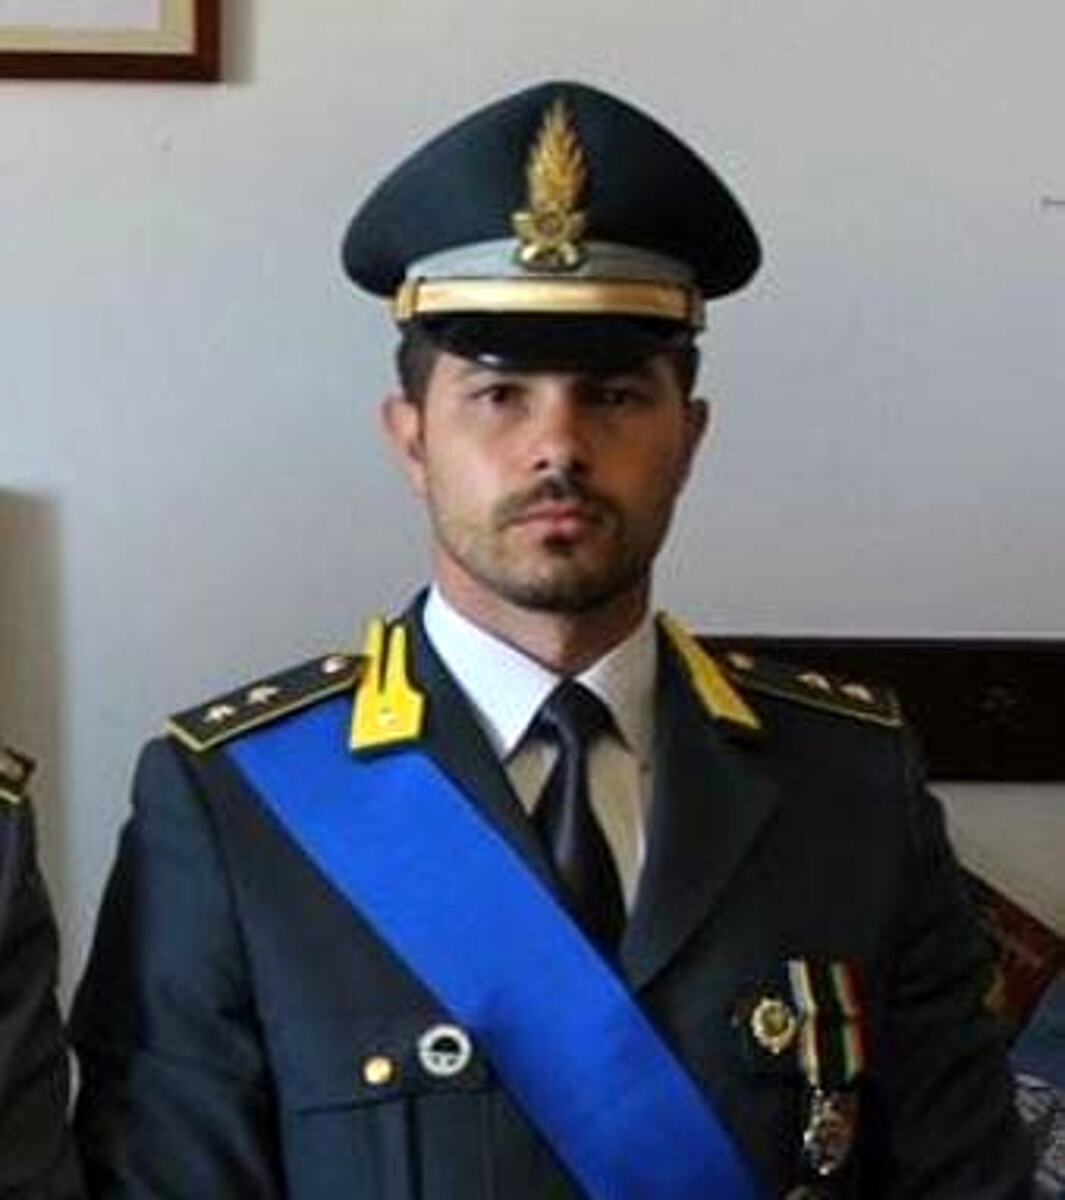 Guardia di Finanza, Alessandro Brongo nuovo comandante della compagnia di Agropoli